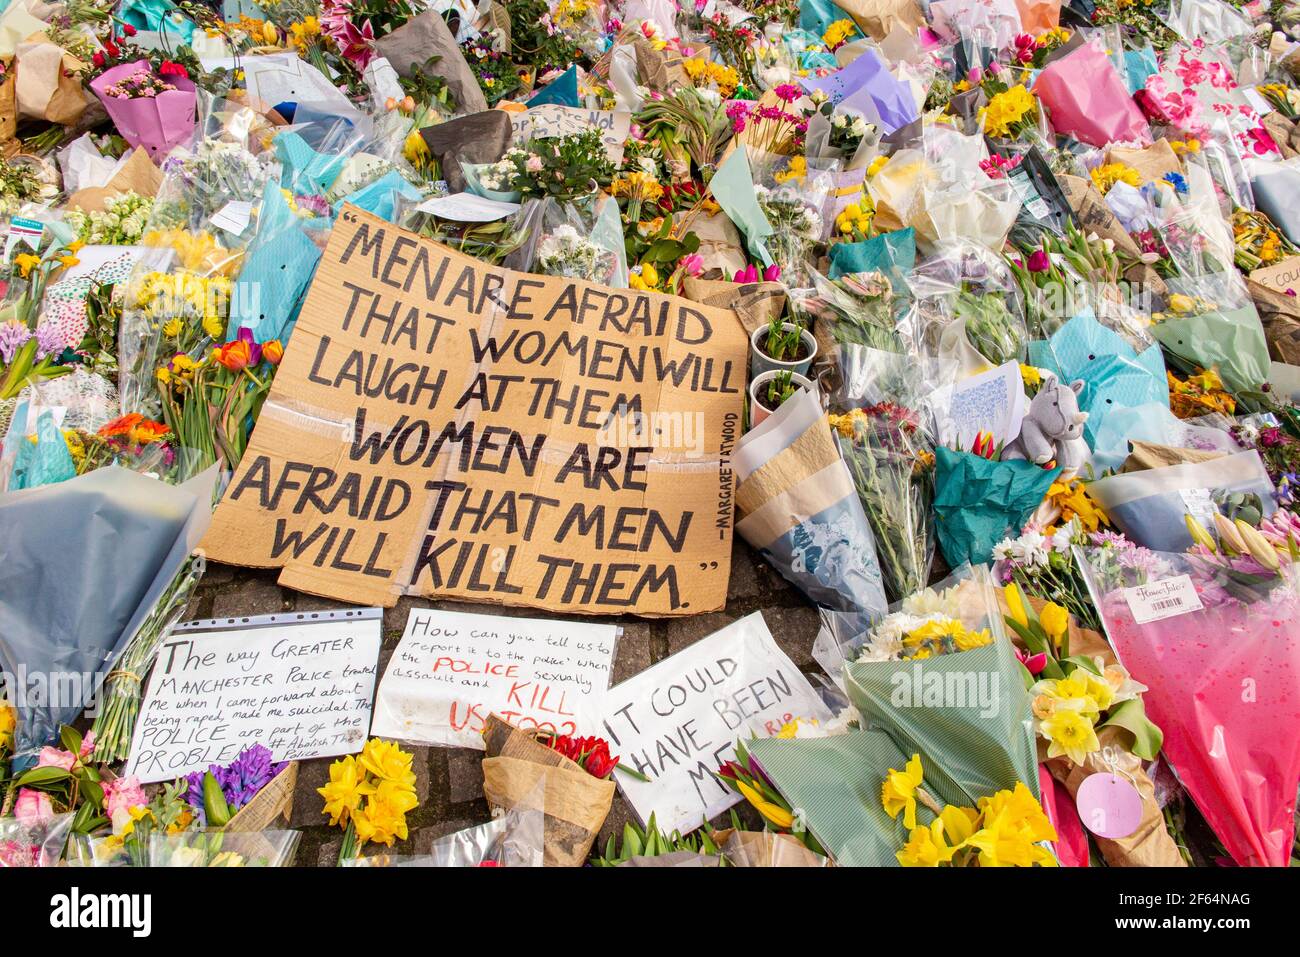 Clapham Common, Londra - poco dopo la veglia e gli arresti dal poice, la calma prevale dove i fiori sono deposti in memoria di Sarah Everard. Foto Stock